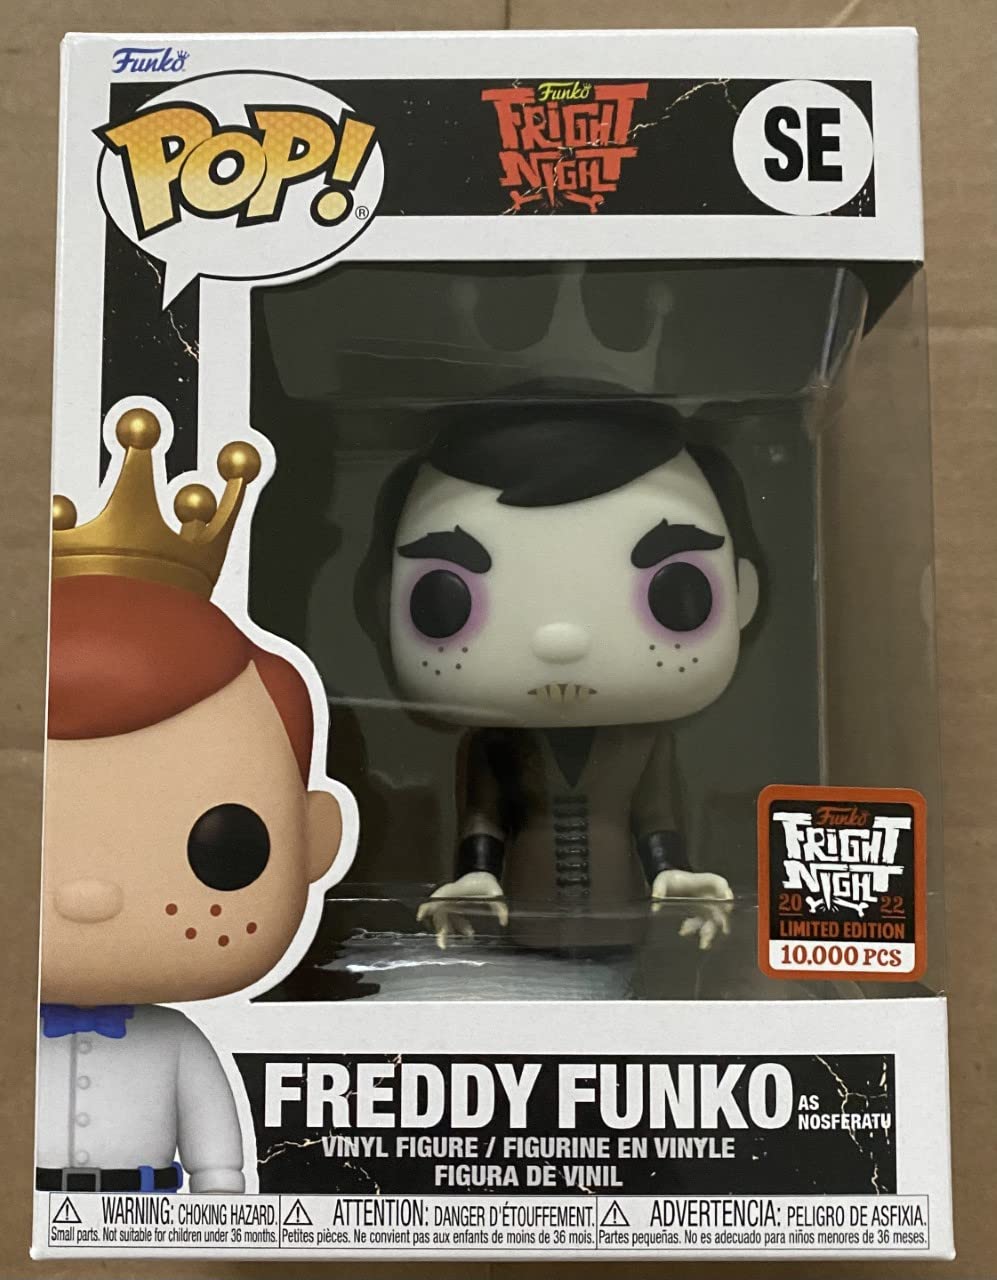 Funko POP! Fright Night II Freddy Funko As Nosferatu LE 10000 Exclusive